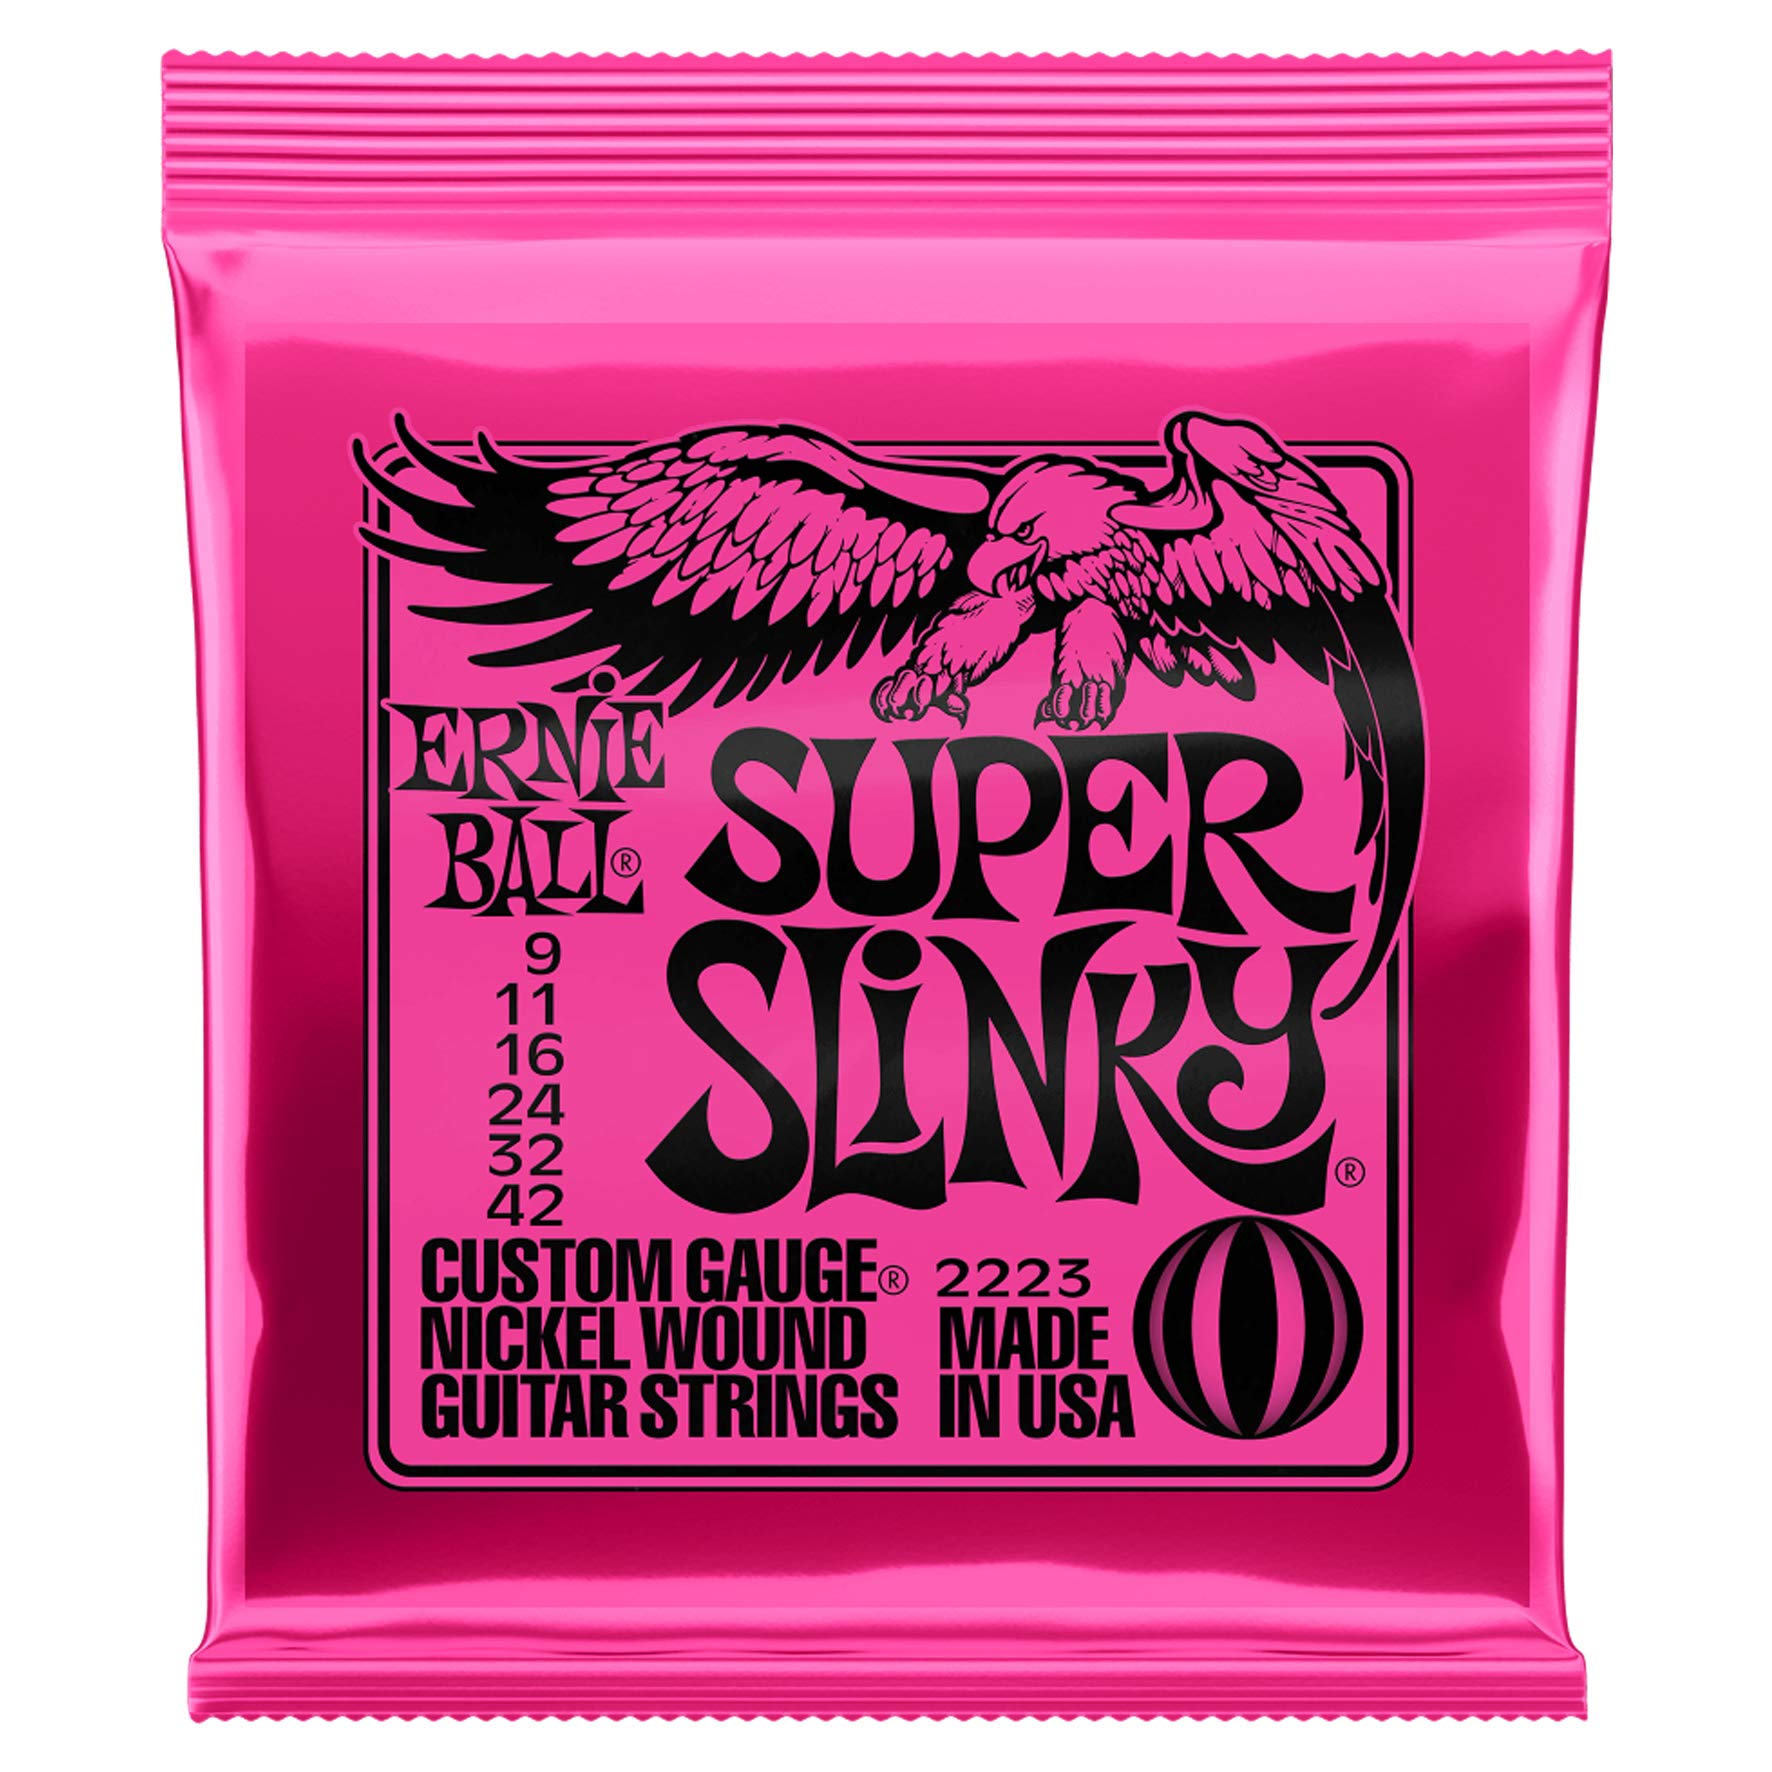 Book Cover Ernie Ball 2223 Nickel Super Slinky Guitar Strings - Buy 10, Get 2 Free super 12 Pack